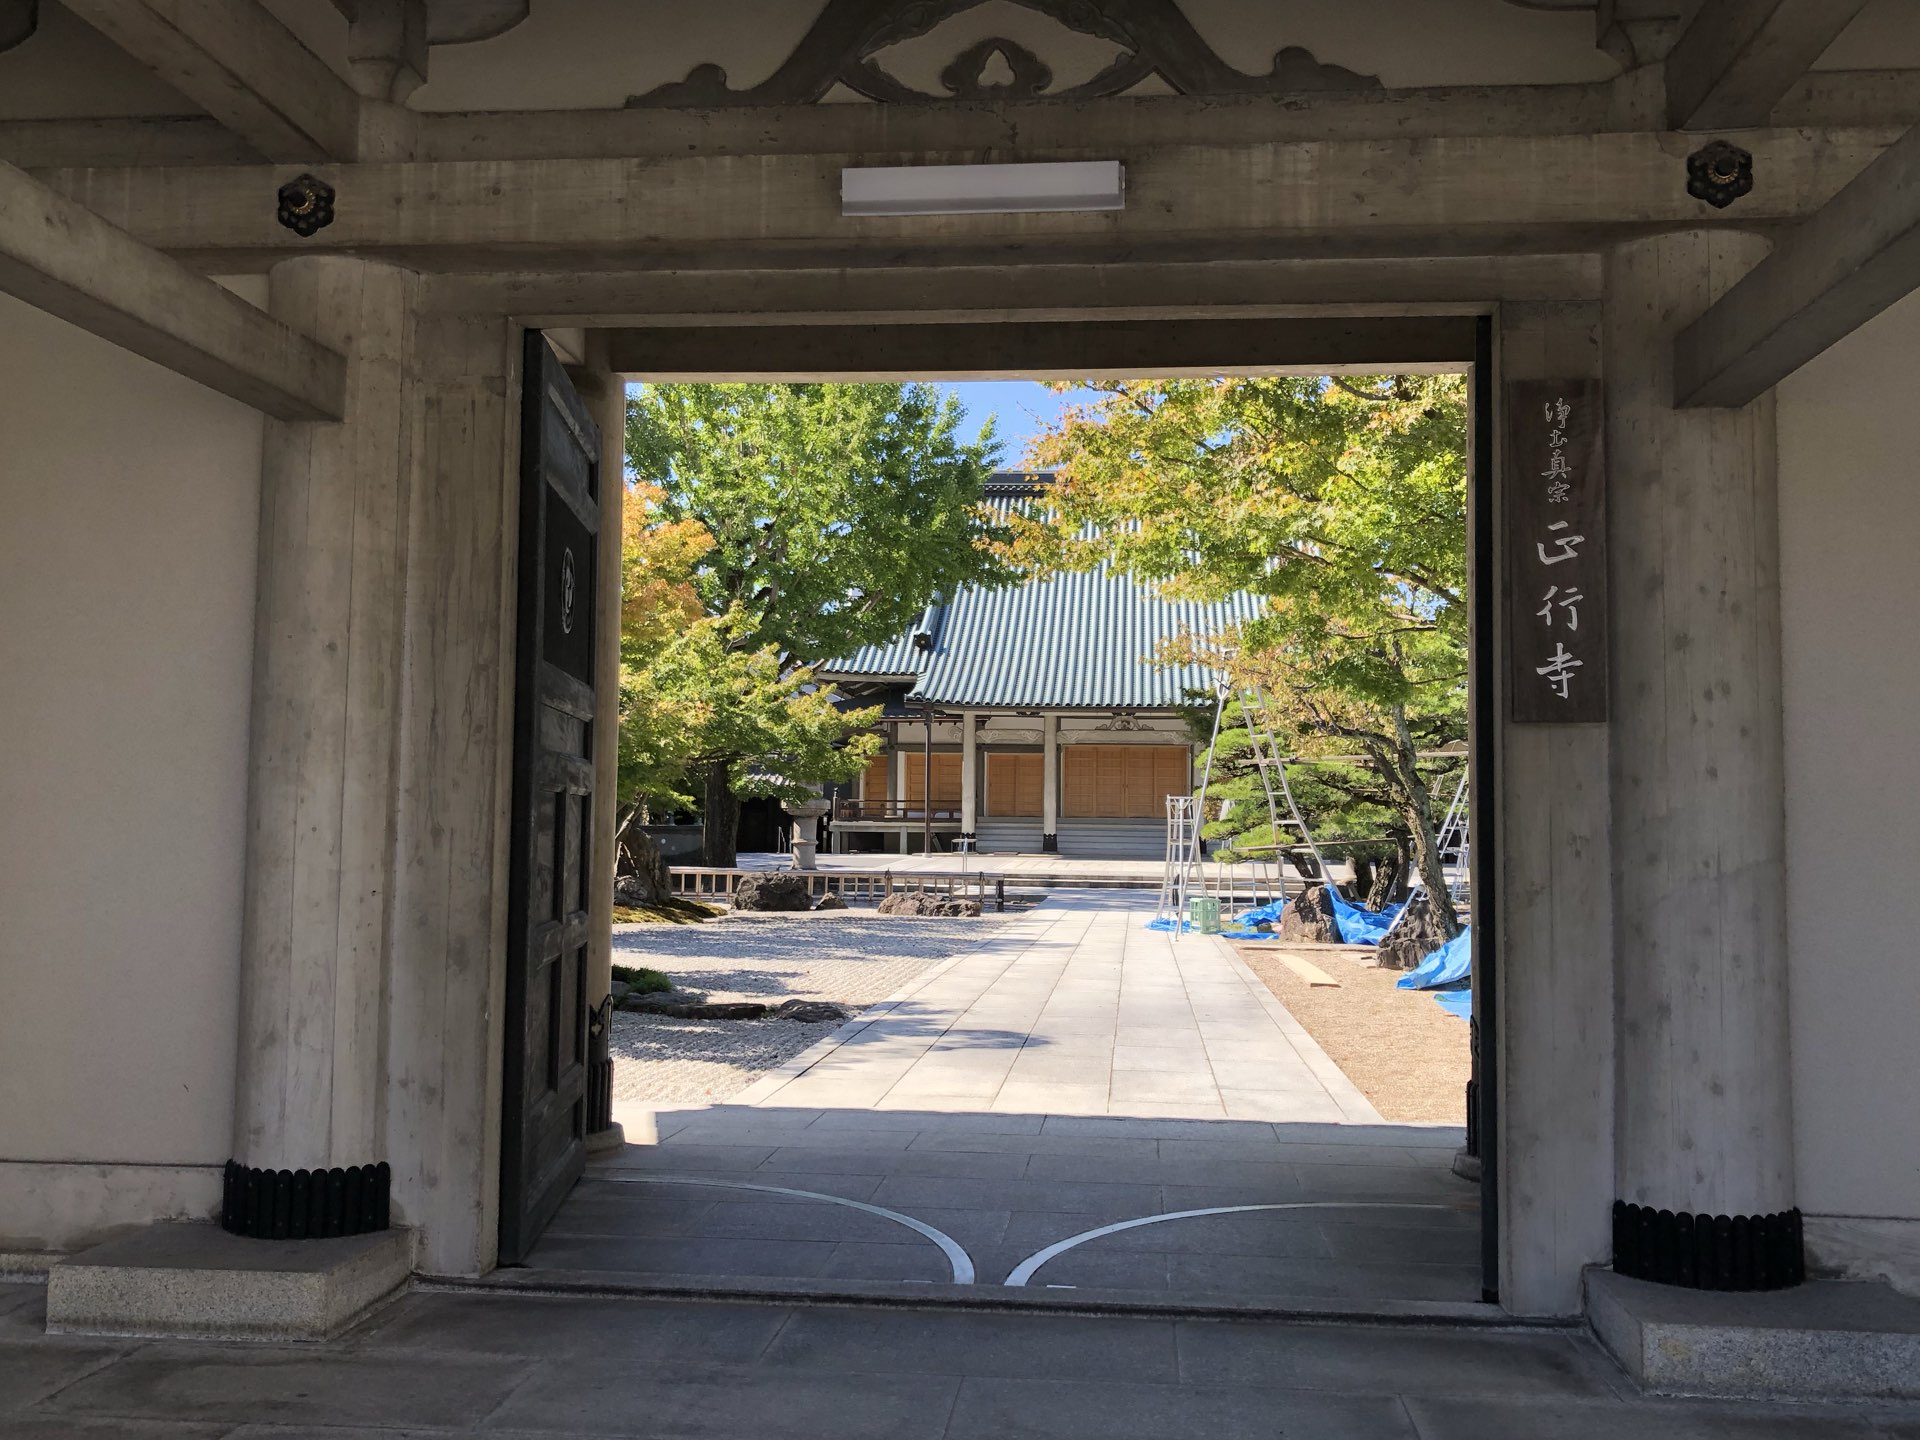 【福冈】二日市站附近的绝妙寺院